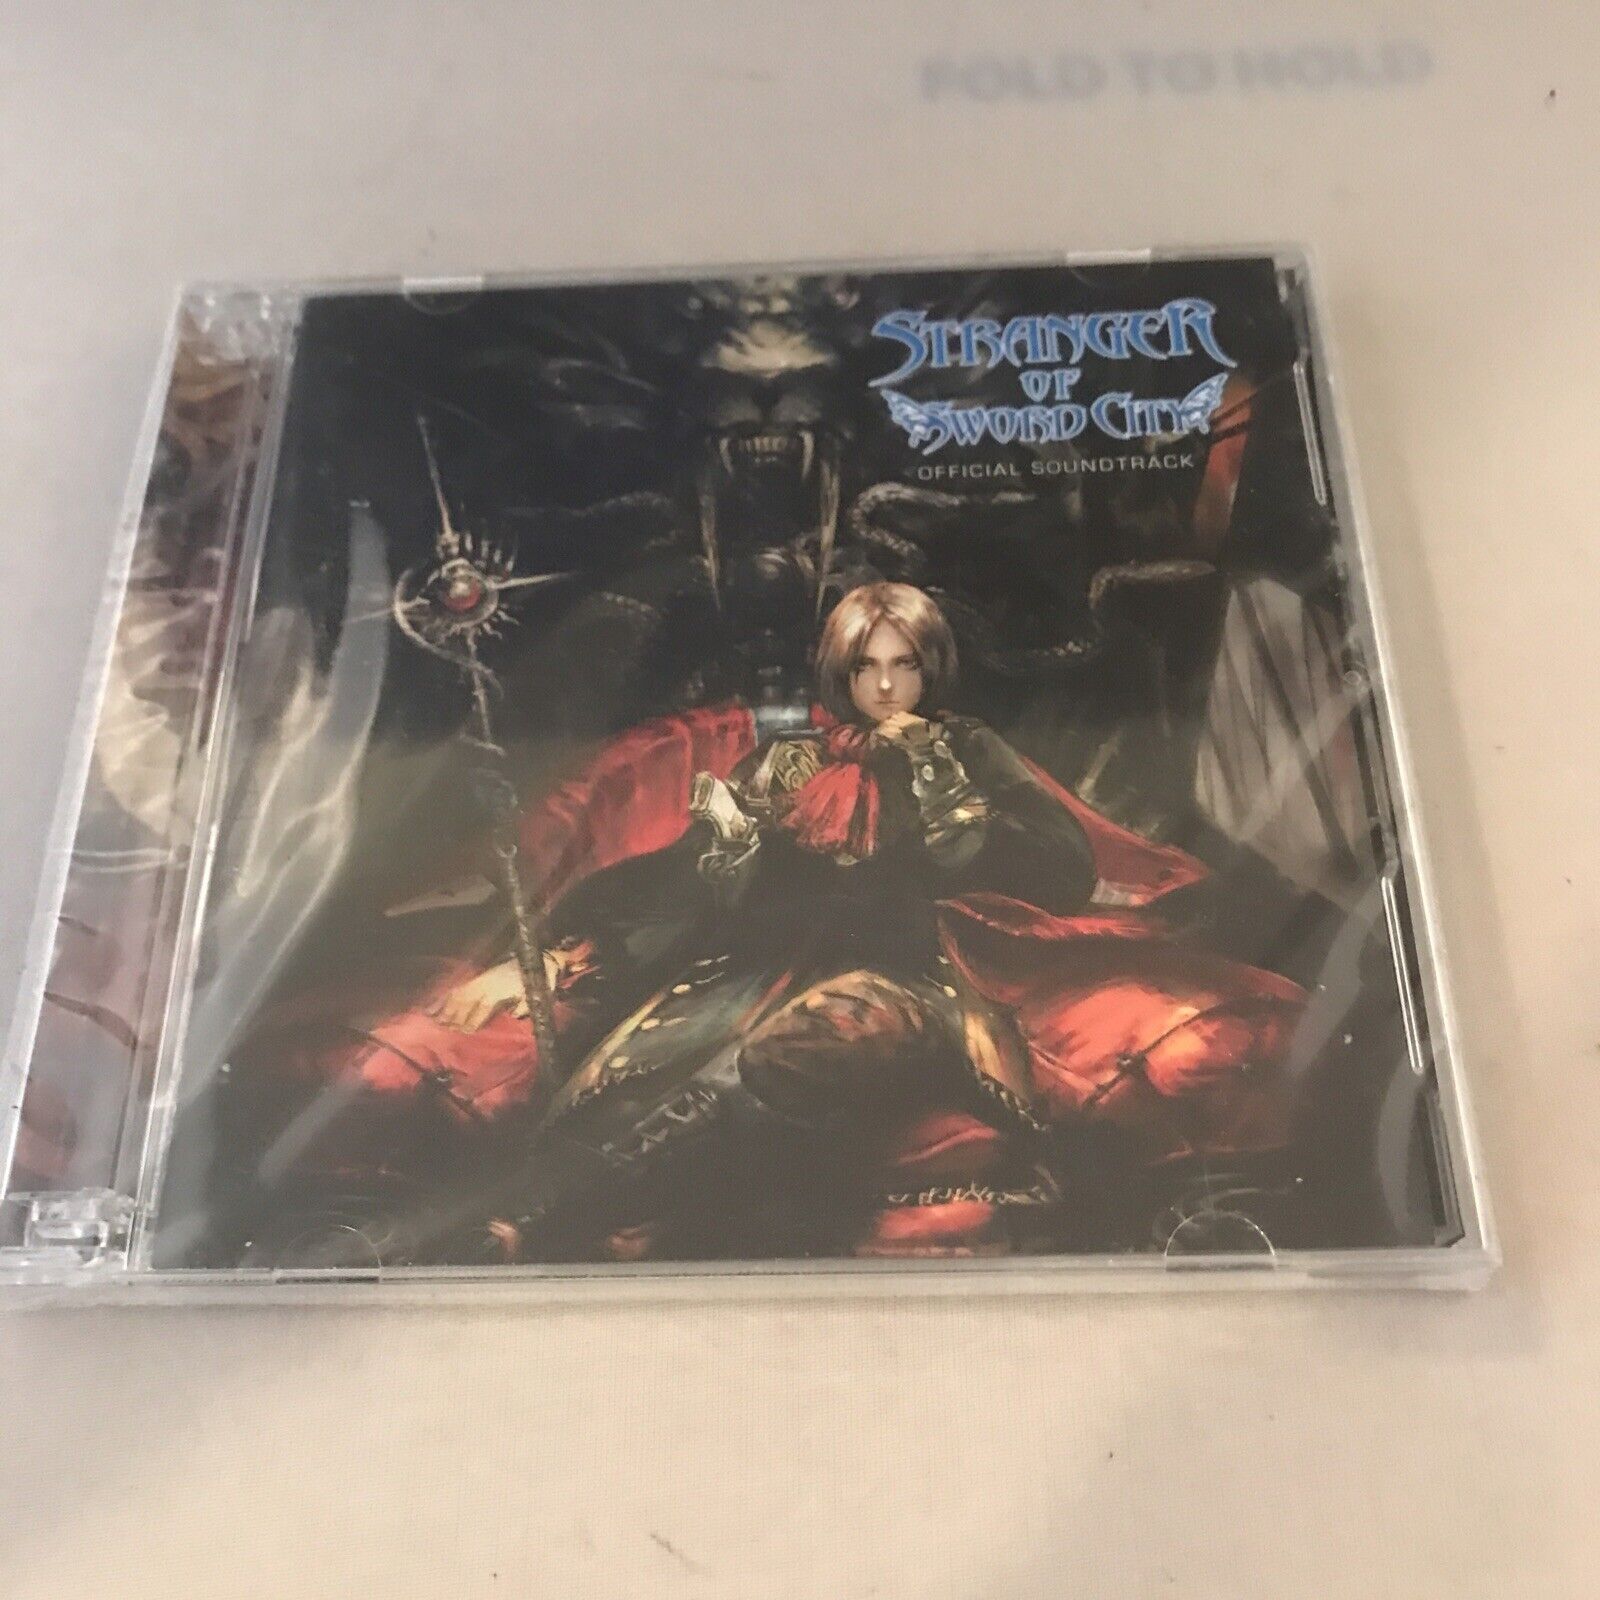 Stranger Of Sword City Official Soundtrack CD New Sealed 2 Disc Set